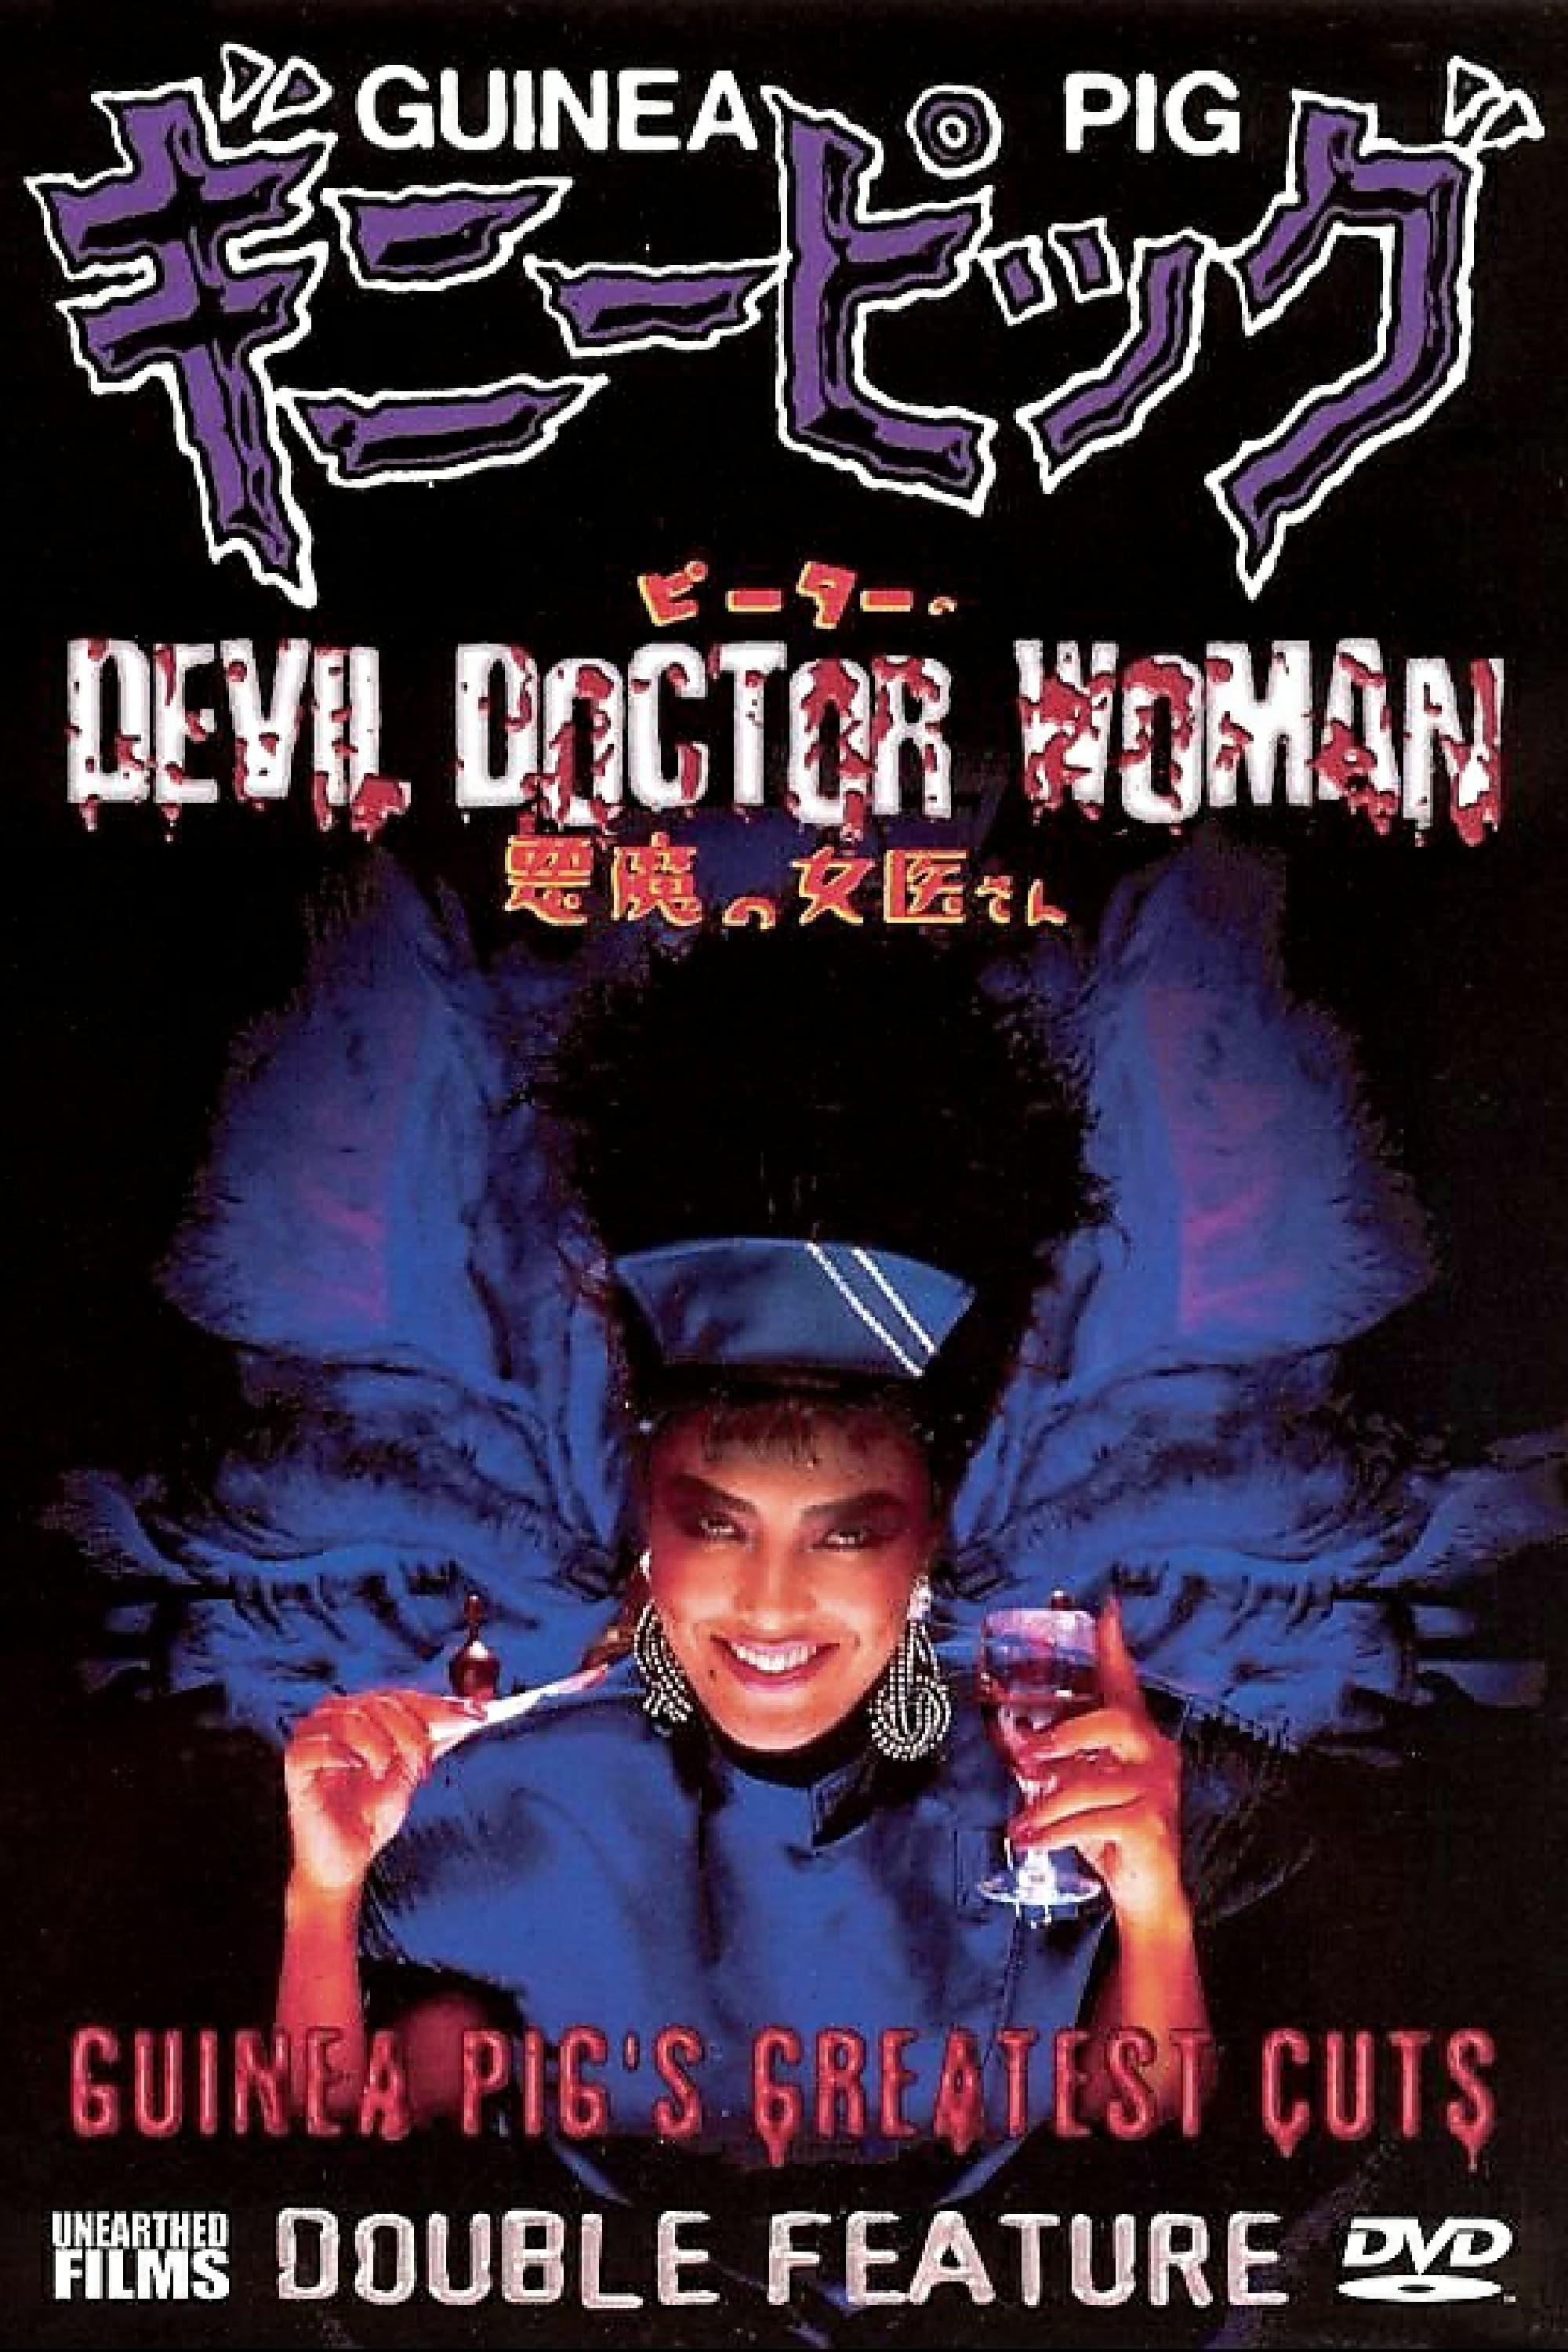 Guinea Pig Part 4: Devil Doctor Woman poster